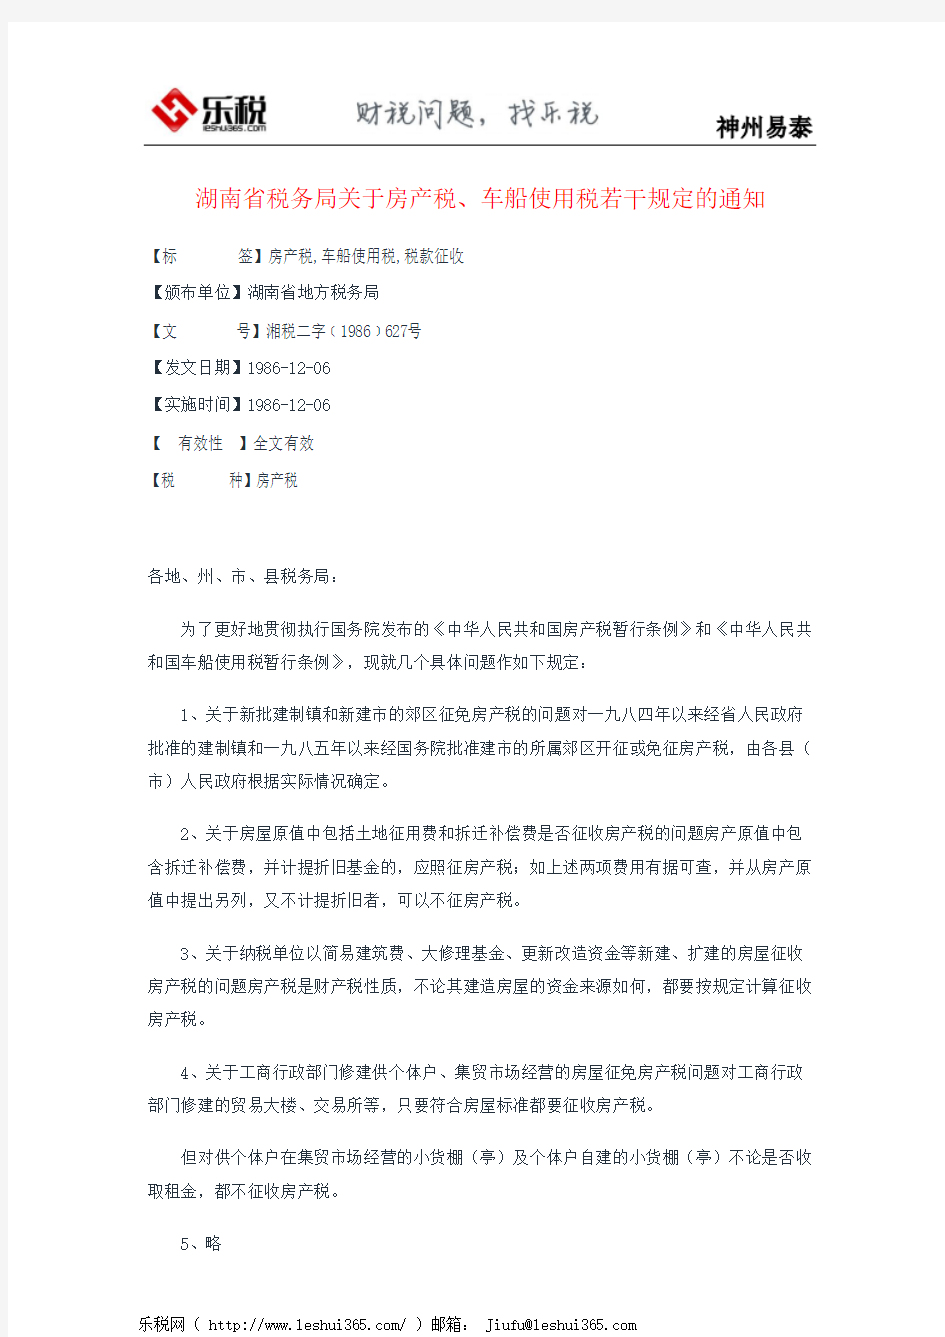 湖南省税务局关于房产税、车船使用税若干规定的通知